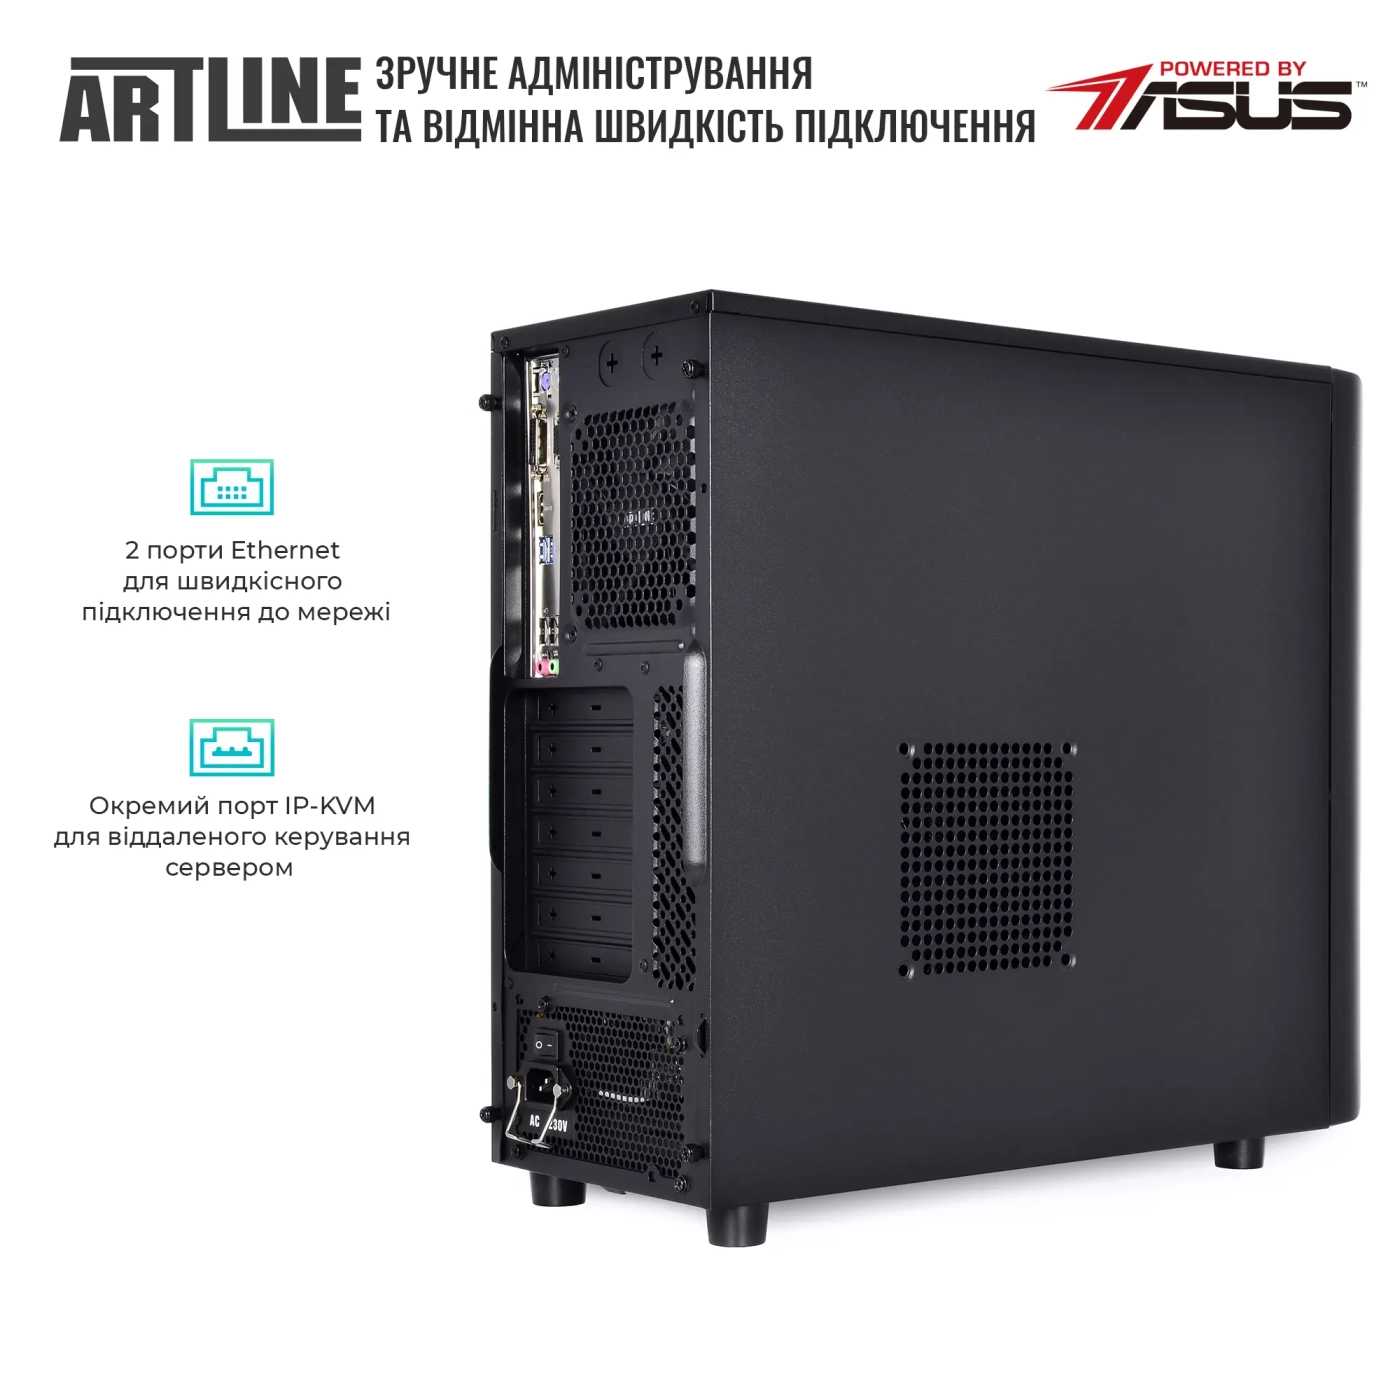 Купить Сервер ARTLINE Business T35 (T35v44) - фото 5